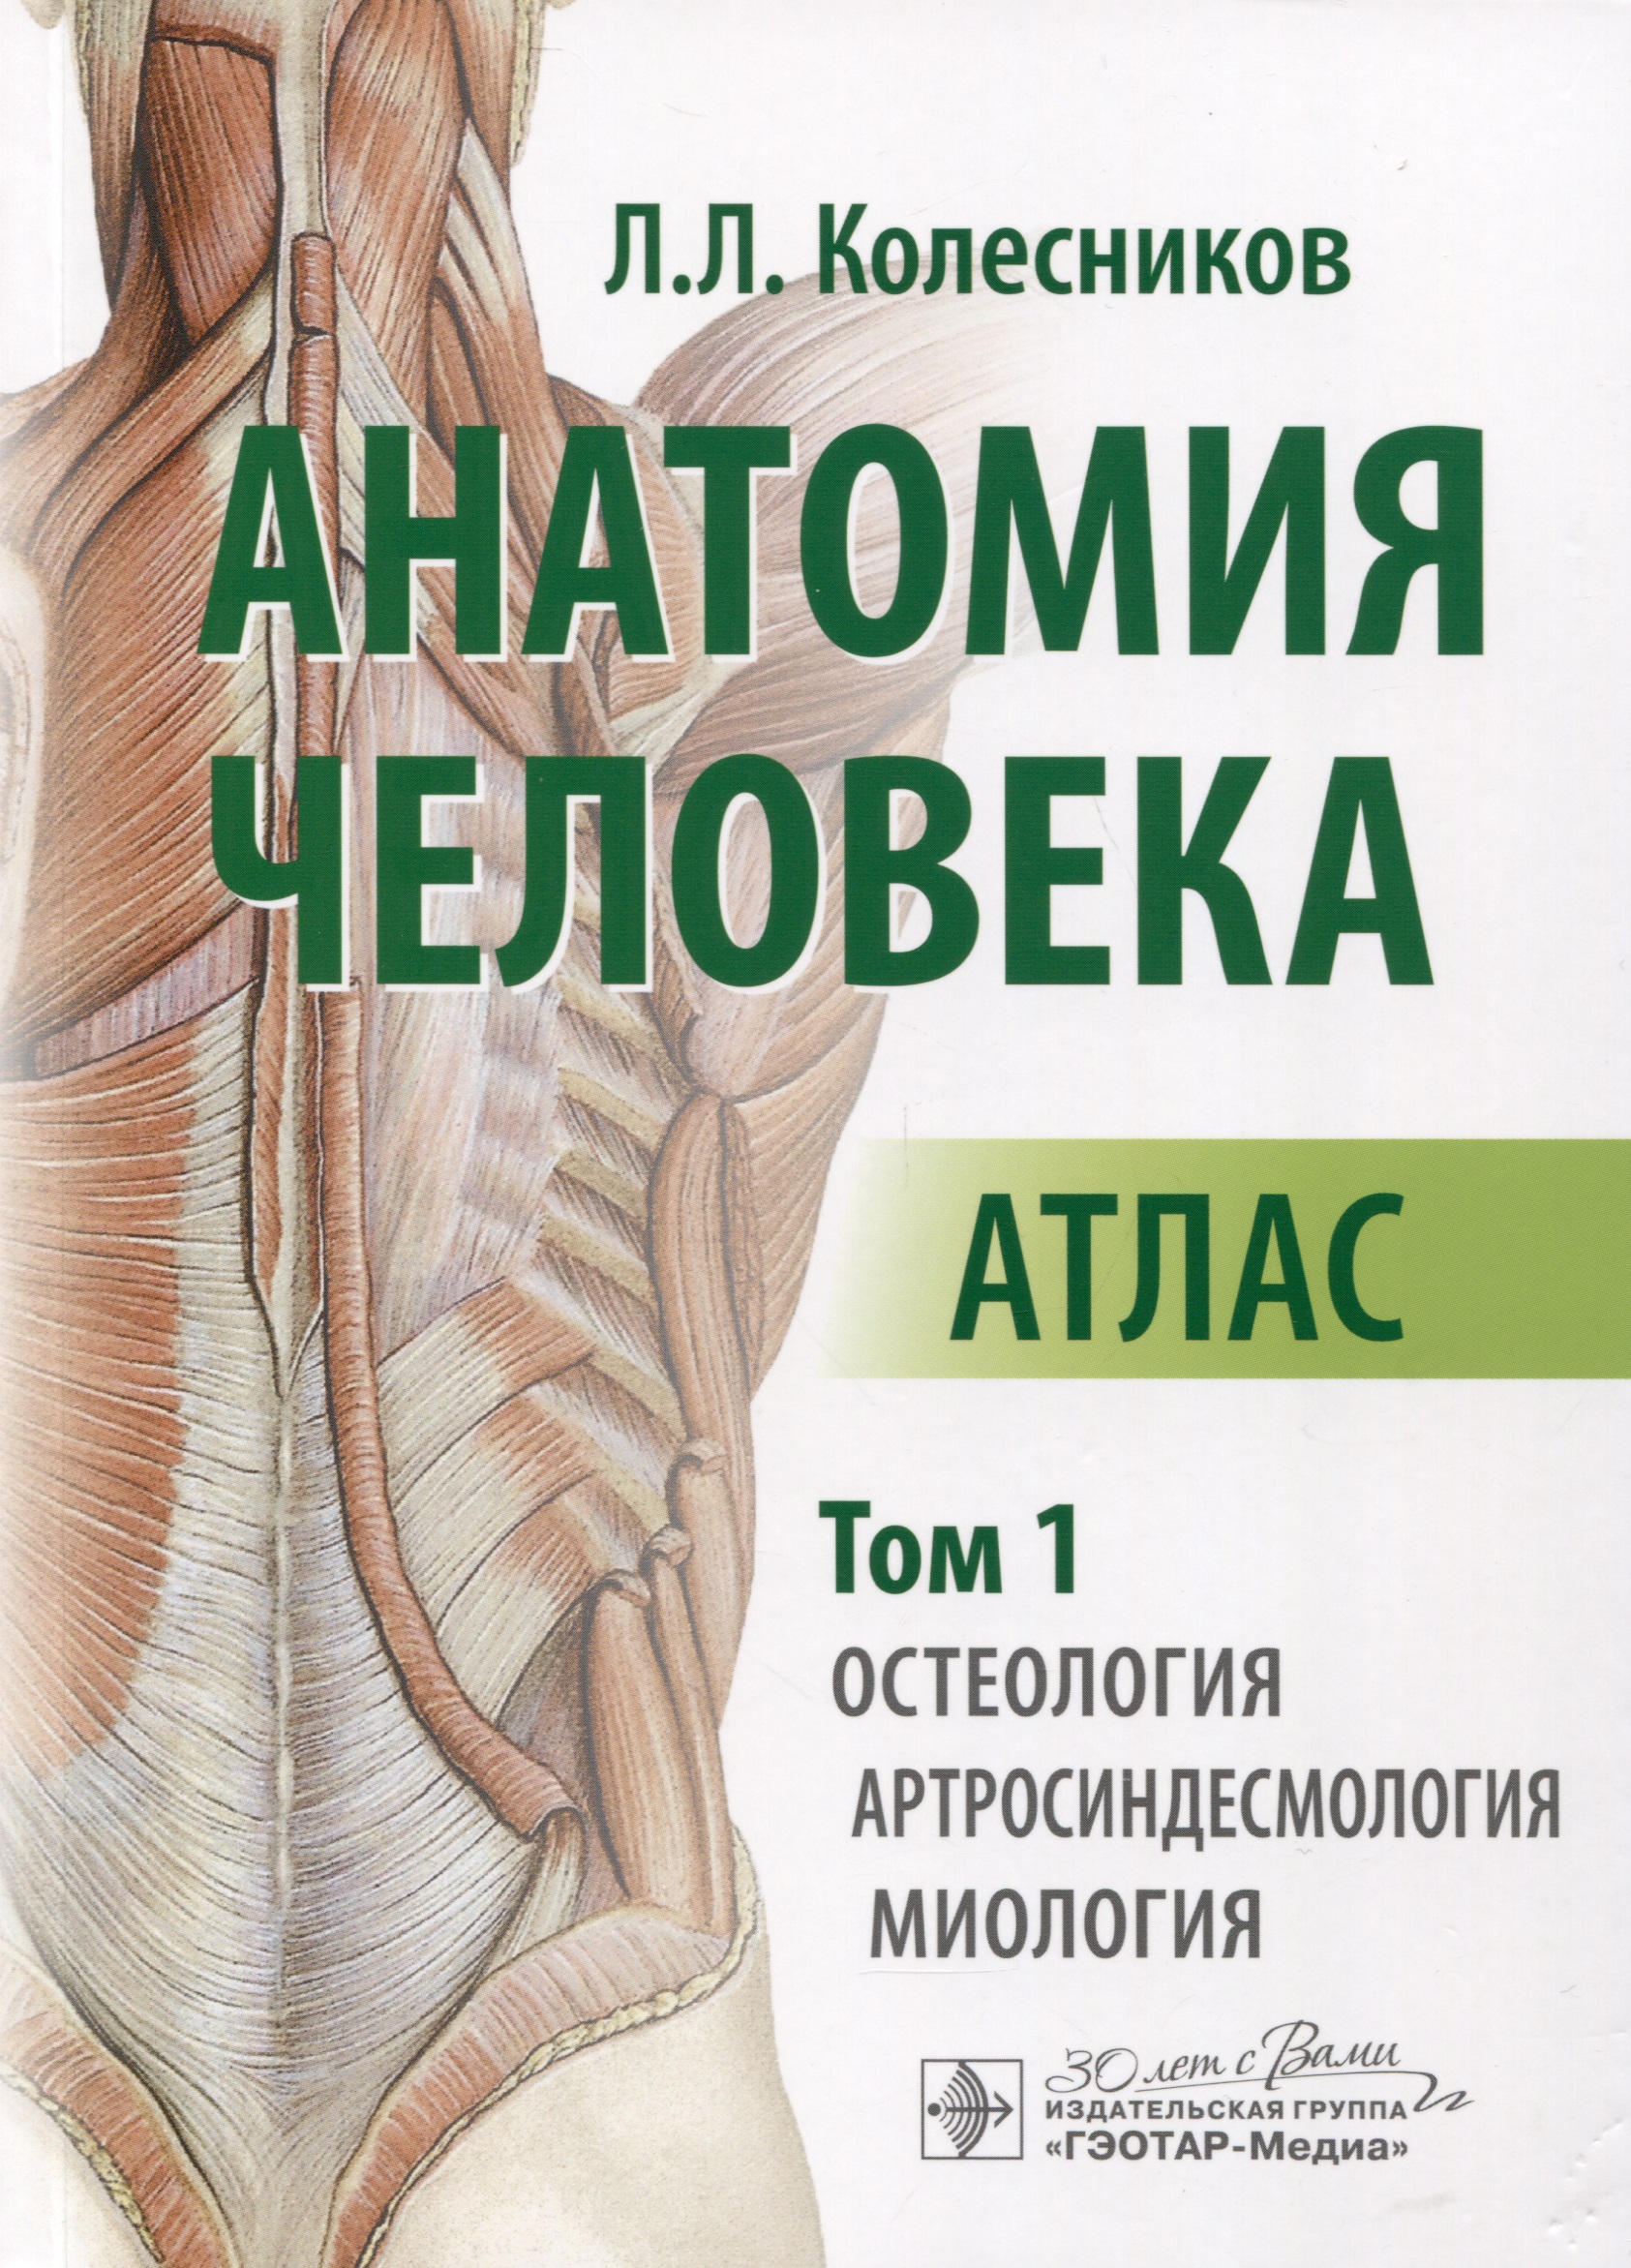 Анатомия человека. Атлас. В 3 томах. Том 1. Остеология, артросиндесмология, миология